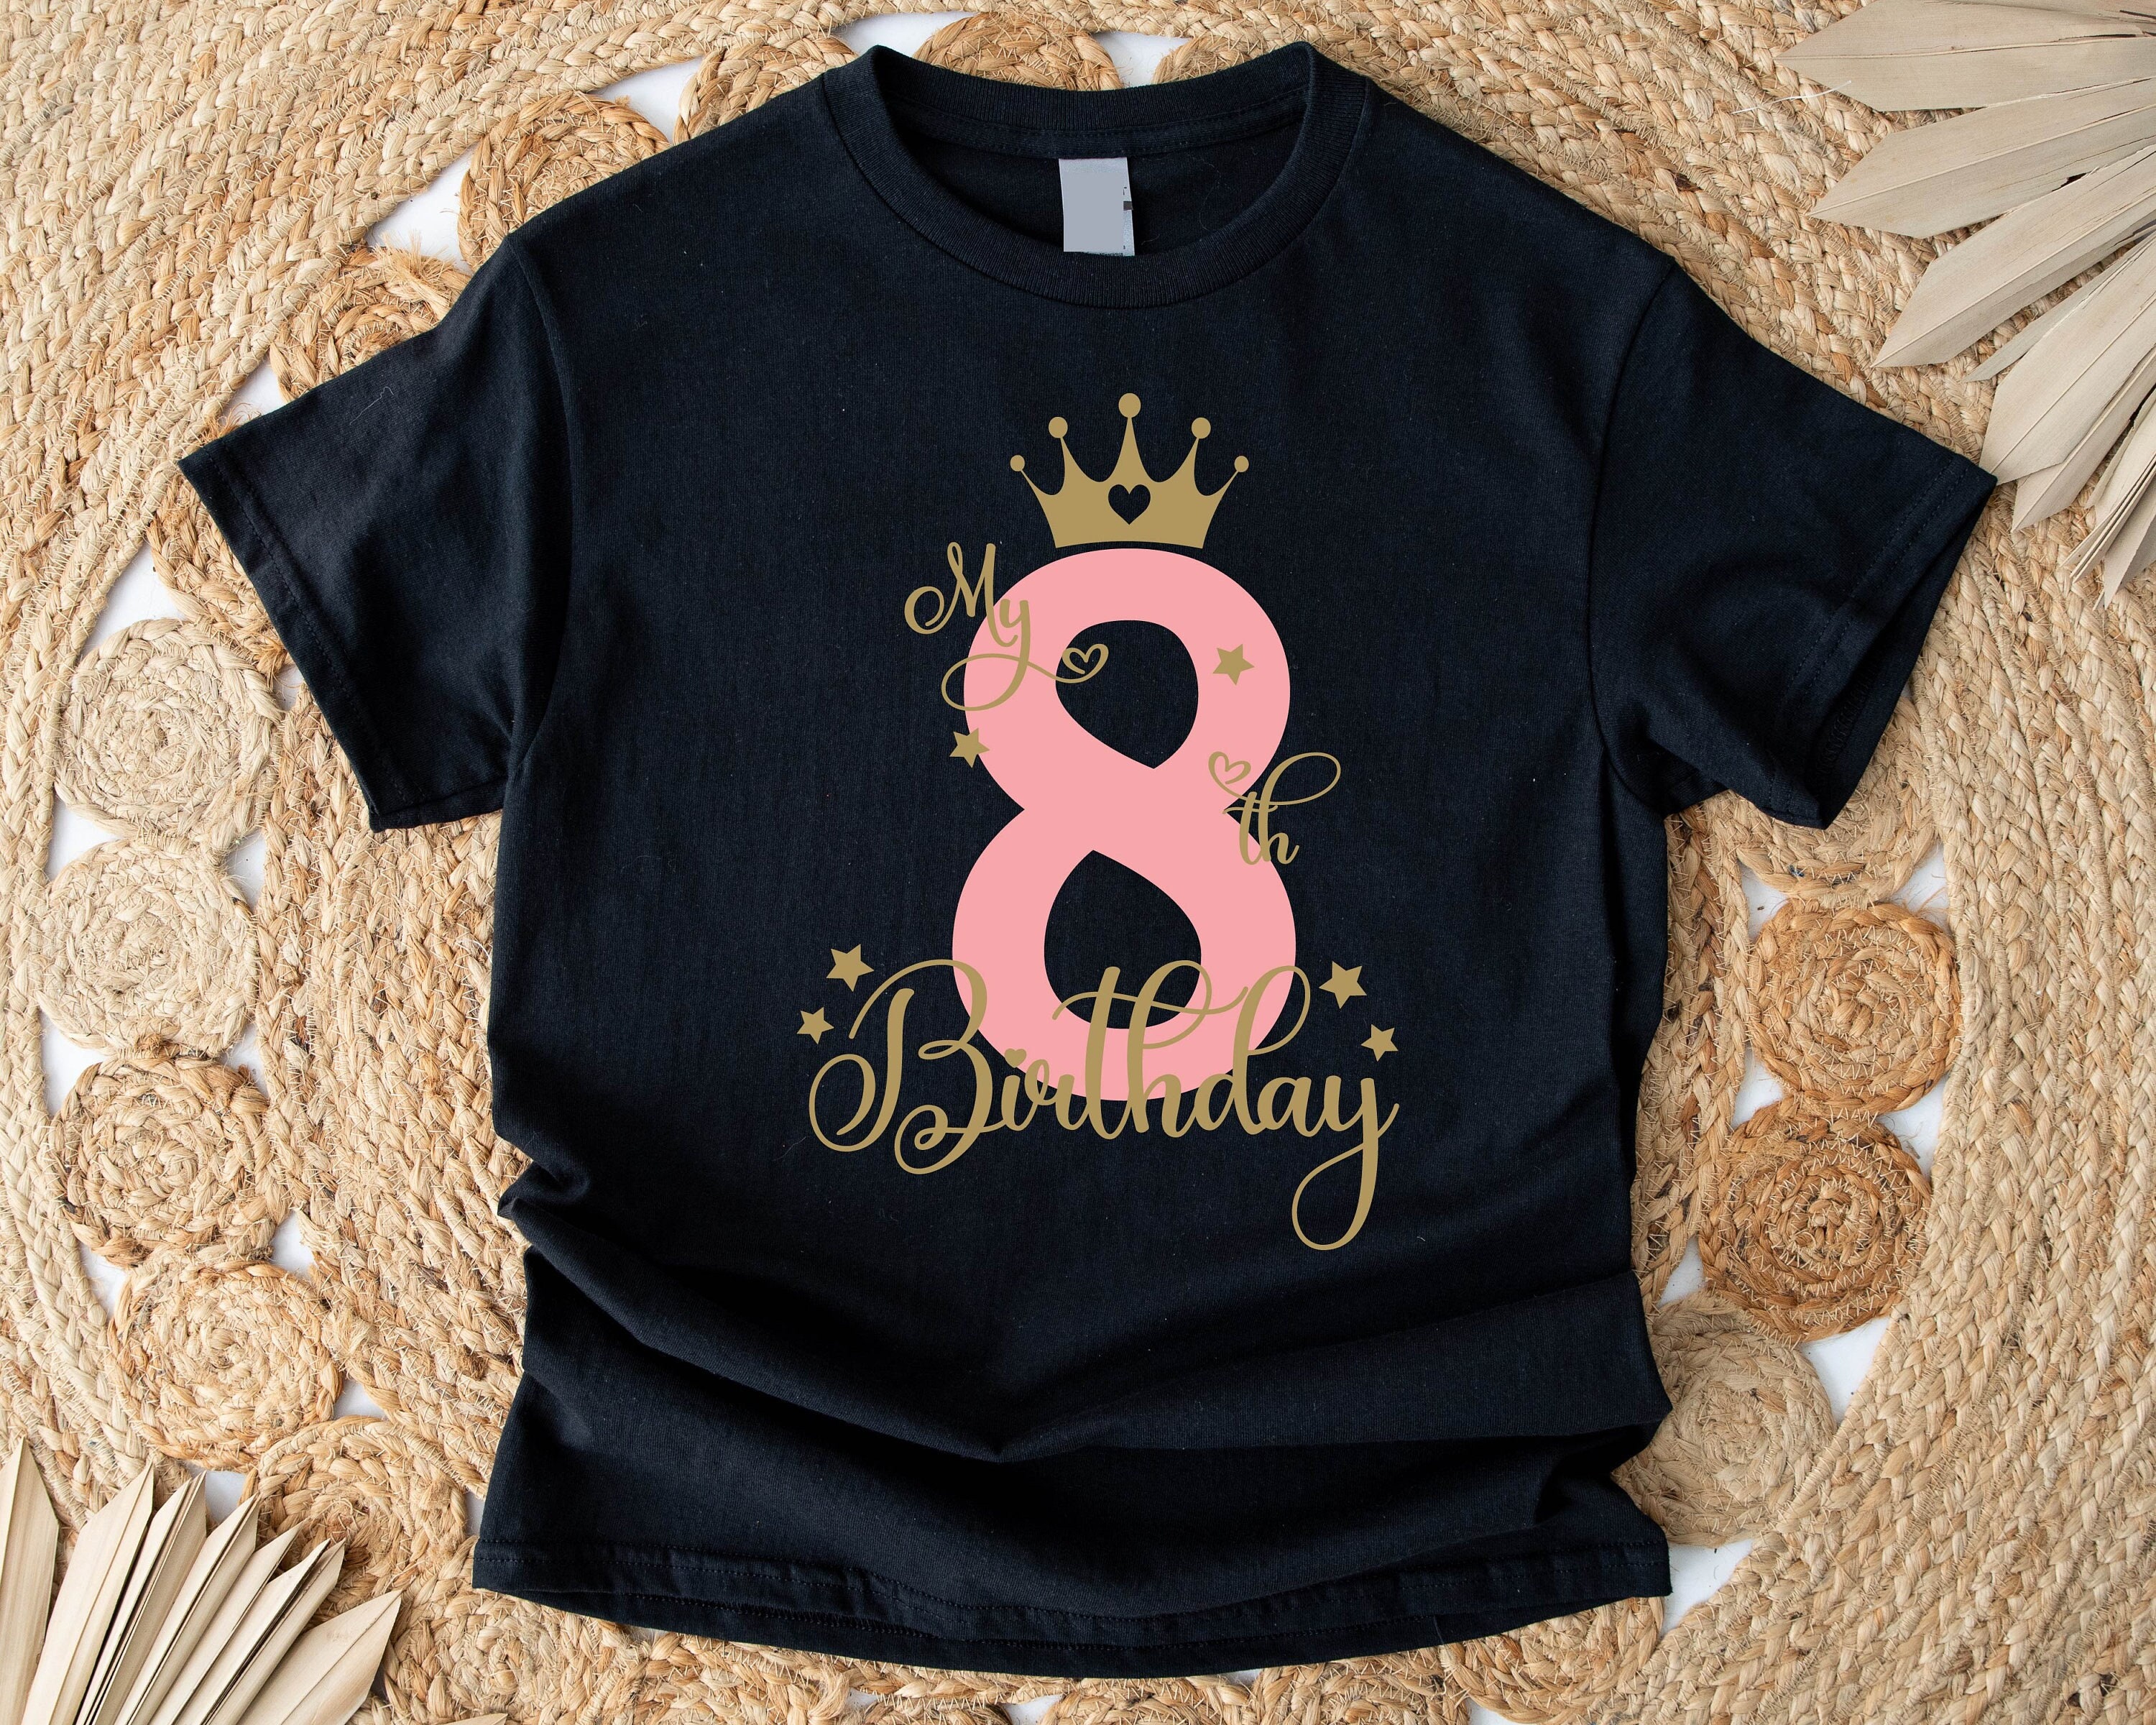 7yr Old Girl Birthday Gift Ideas, 7-8 Year Old Girl Birthday Gift Ideas, 7yo Girl Birthday Gift, 7th Birthday Boy T-Shirt, 7th Bday Hoodie